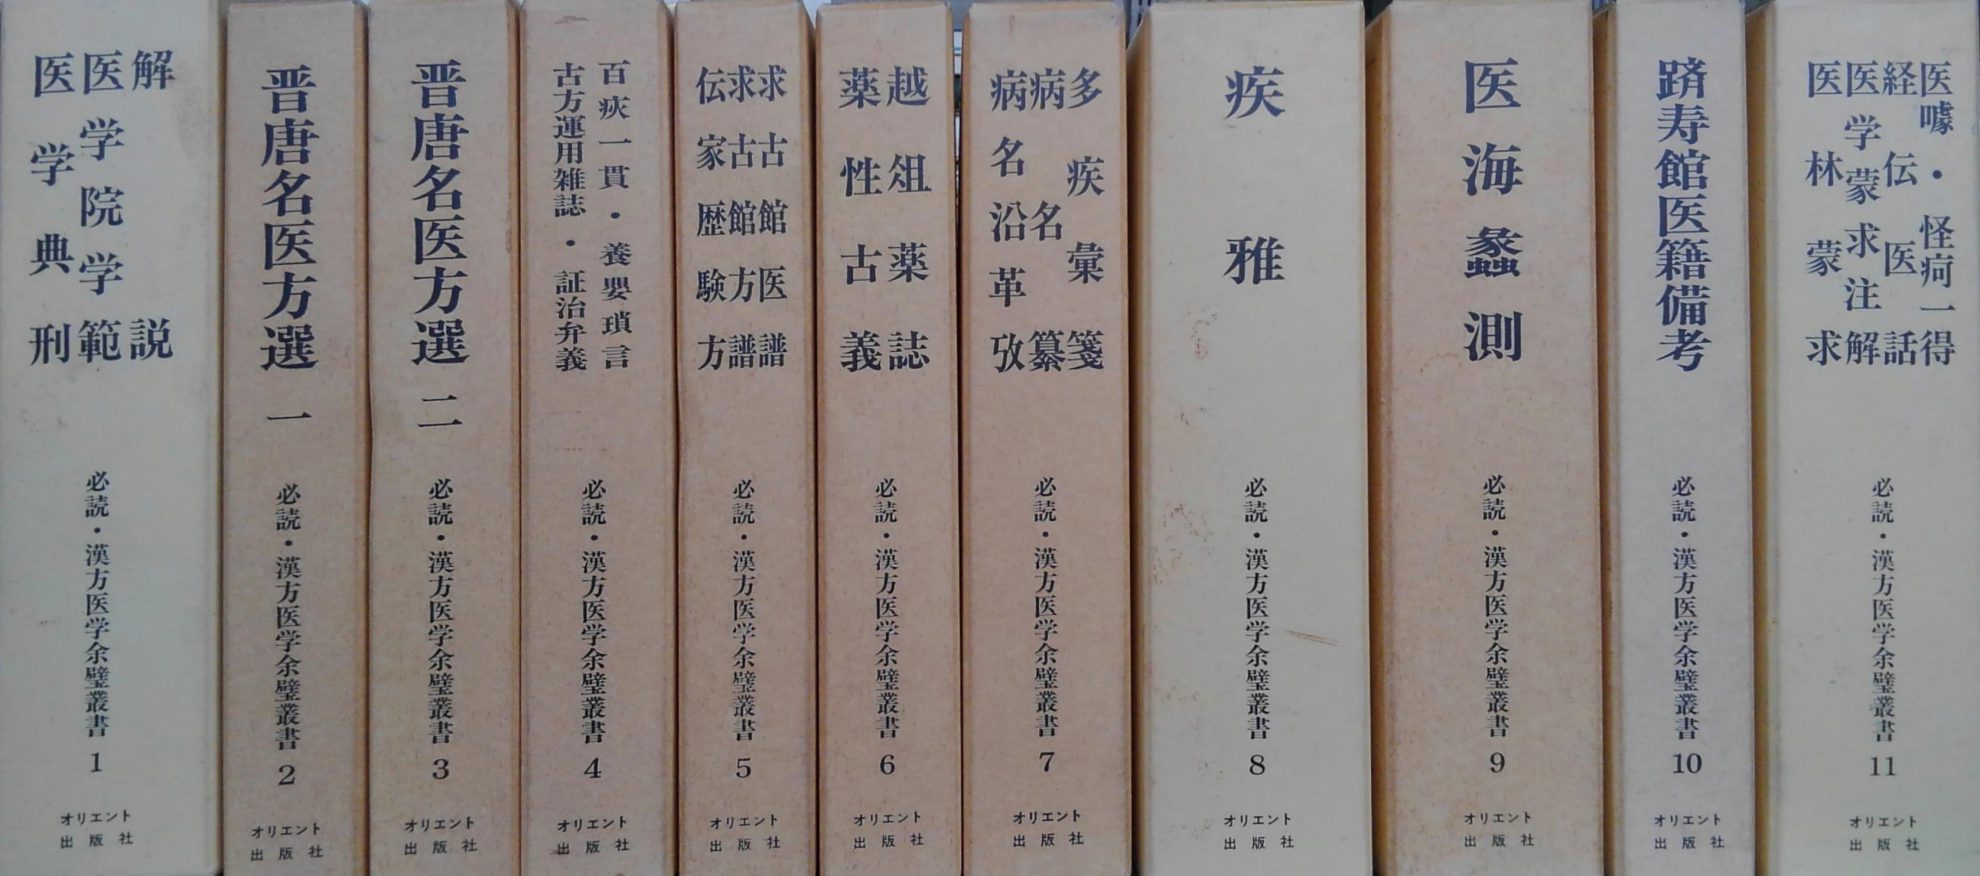 和刻 漢籍医書集成』など東洋医学関係の古書を出張買取致しました